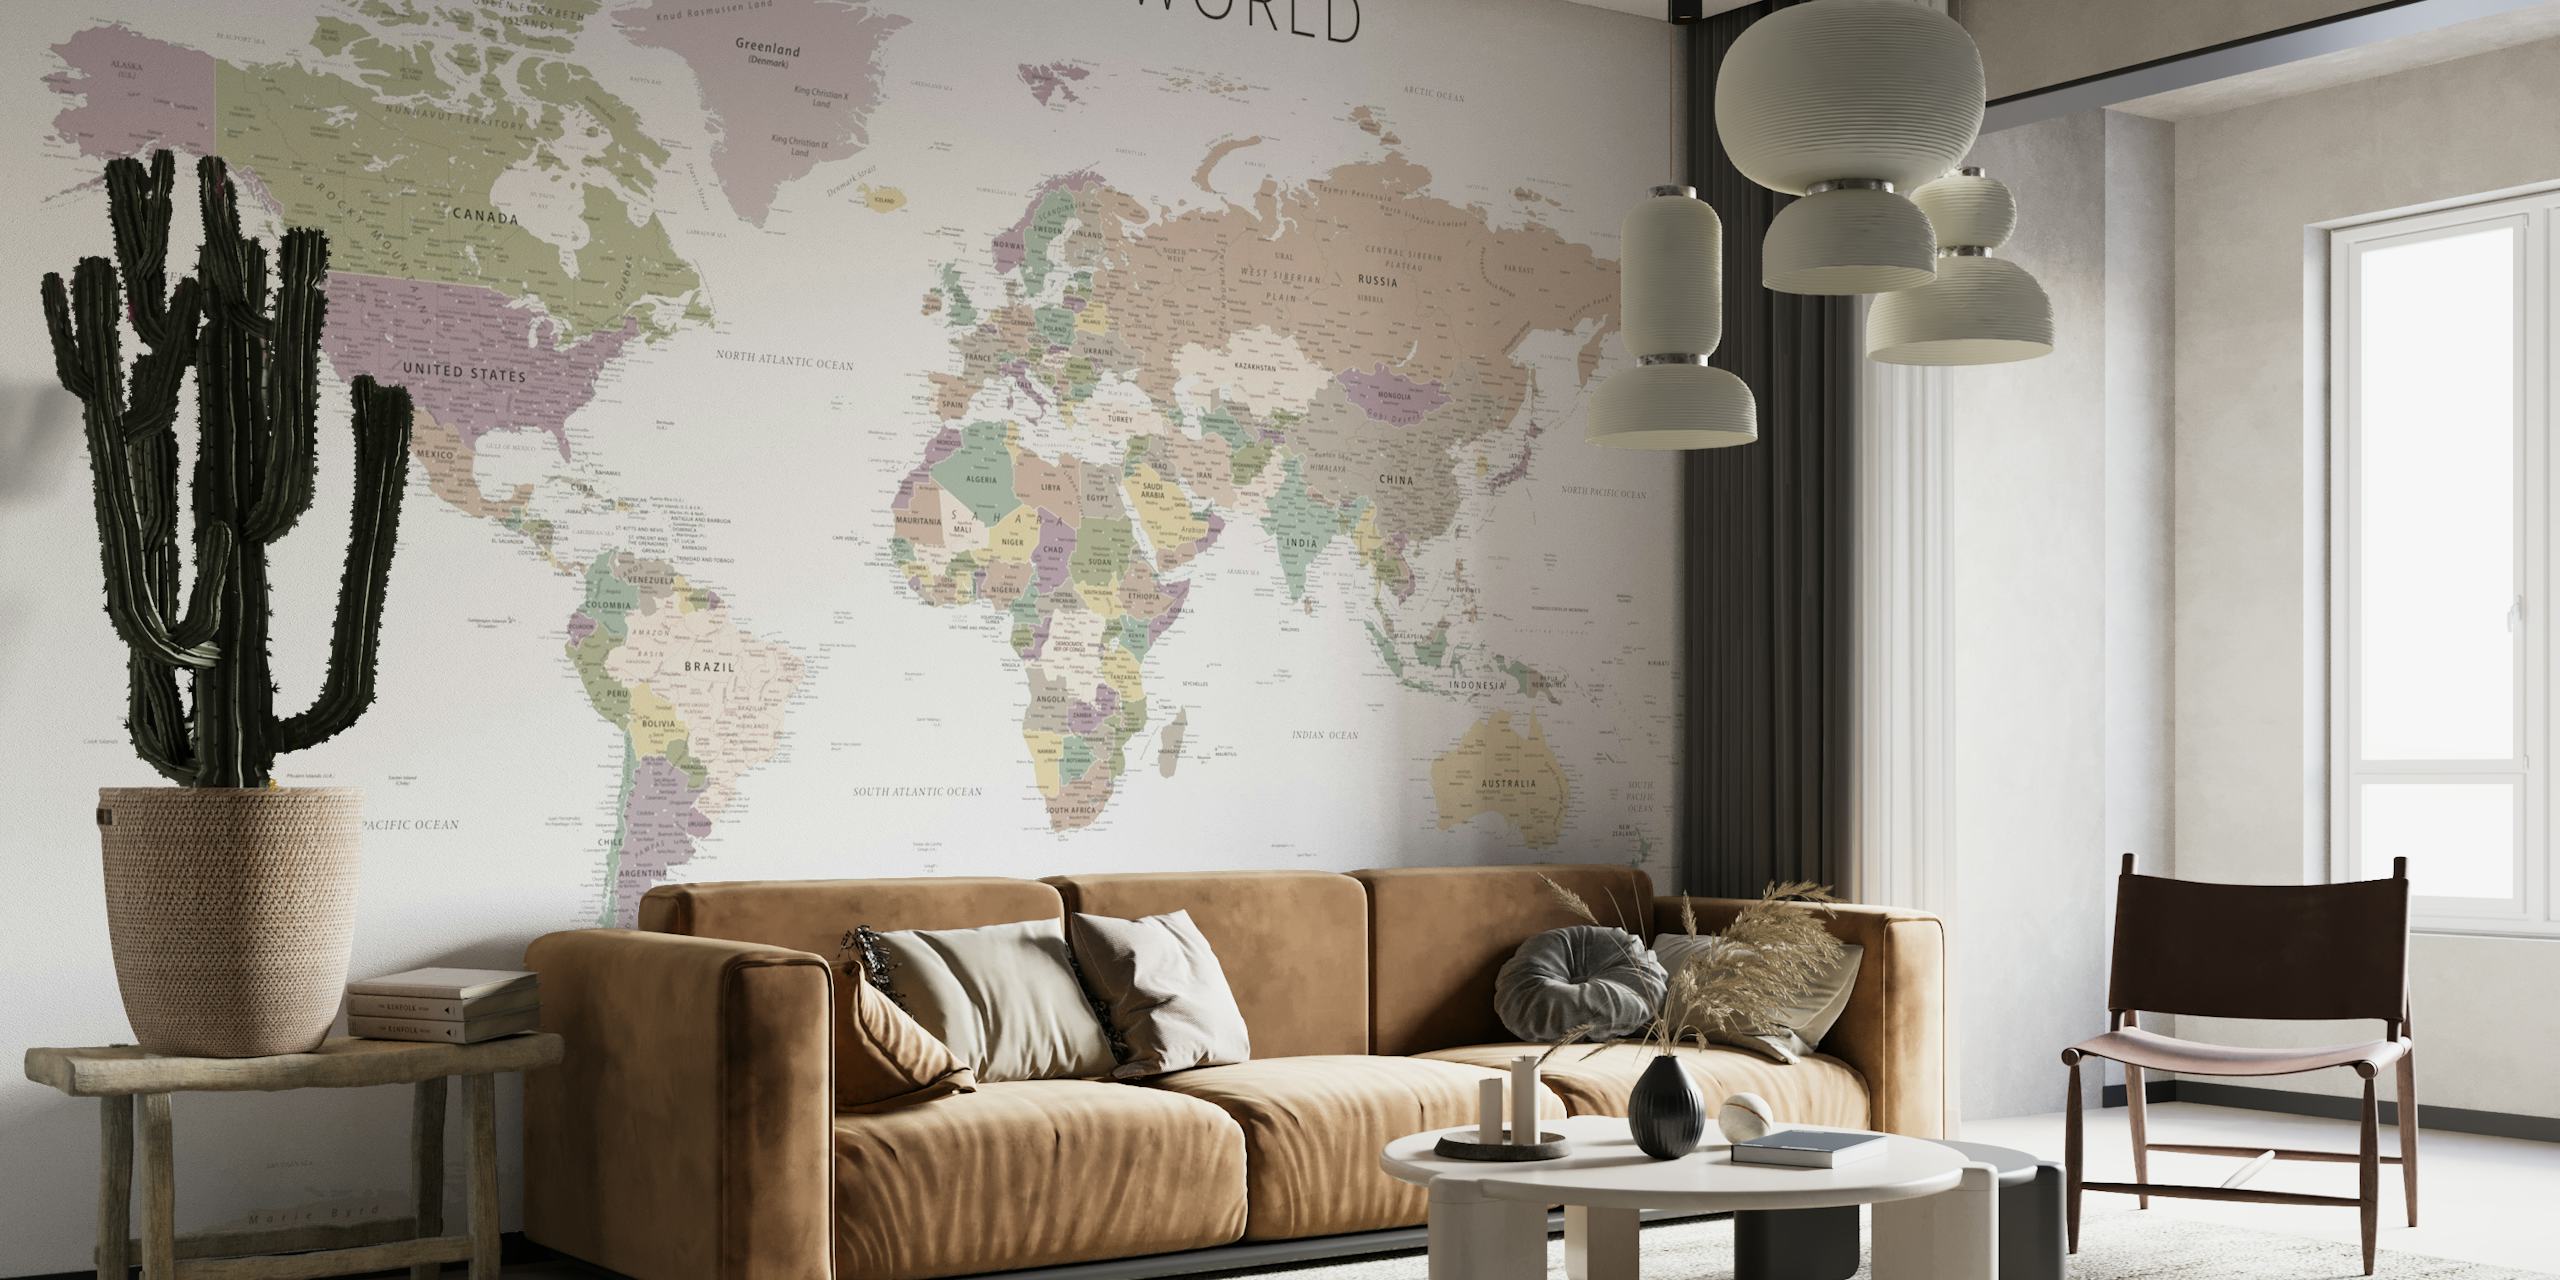 Zidna slika s kartom svijeta u prigušenim neutralnim tonovima s detaljnim detaljima zemalja i granica